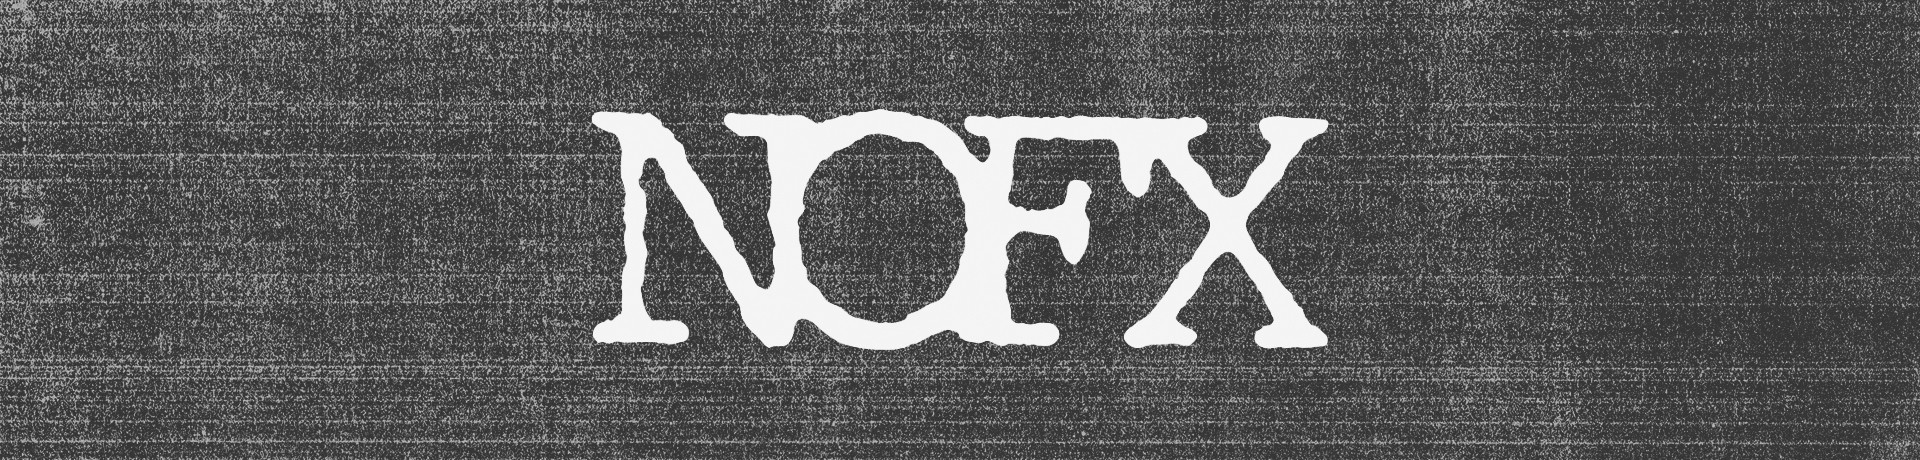 NOFX - Stoke Extinguisher [Single]